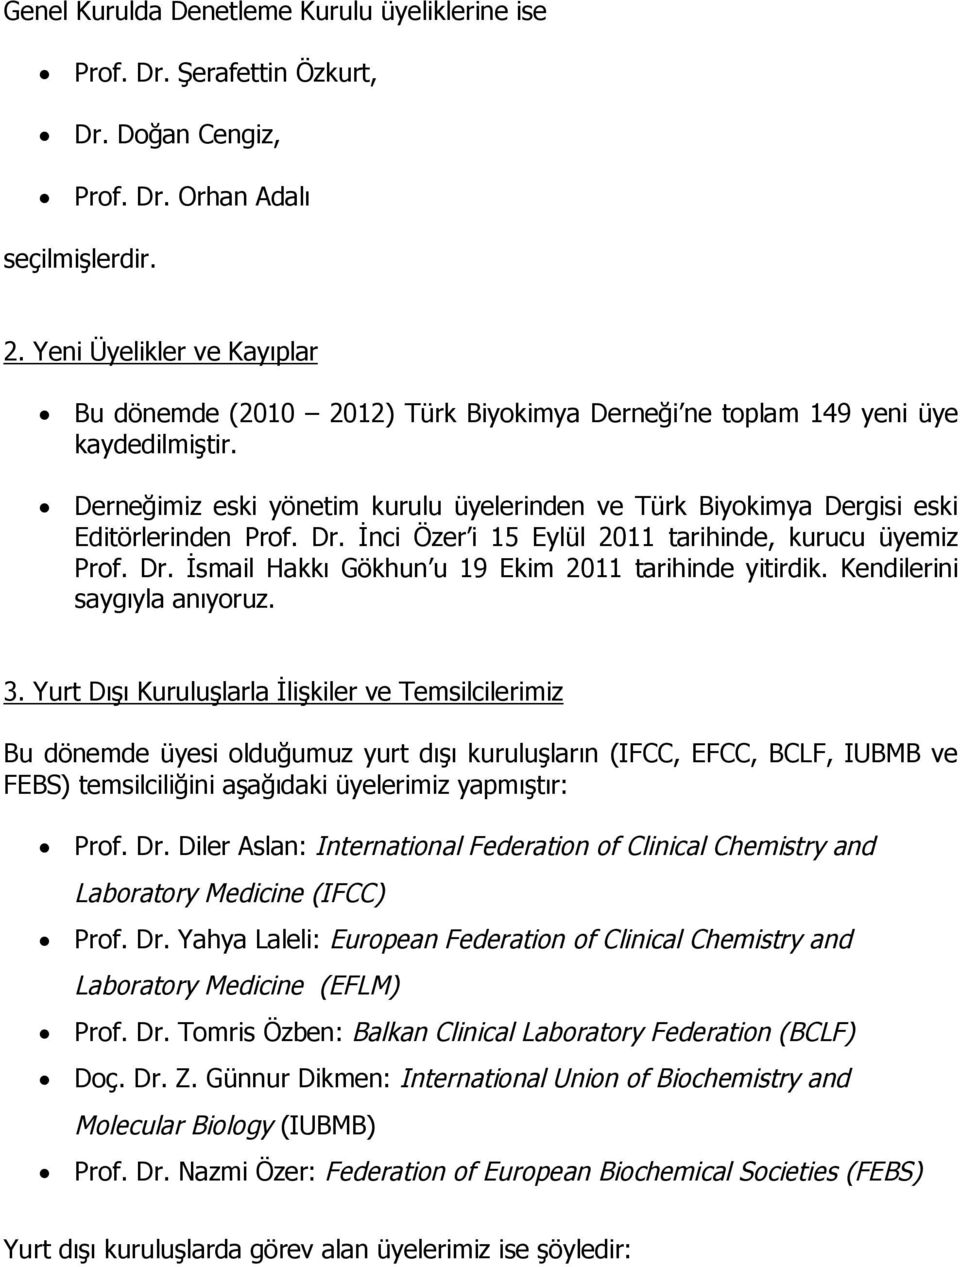 Derneğimiz eski yönetim kurulu üyelerinden ve Türk Biyokimya Dergisi eski Editörlerinden Prof. Dr. İnci Özer i 15 Eylül 2011 tarihinde, kurucu üyemiz Prof. Dr. İsmail Hakkı Gökhun u 19 Ekim 2011 tarihinde yitirdik.